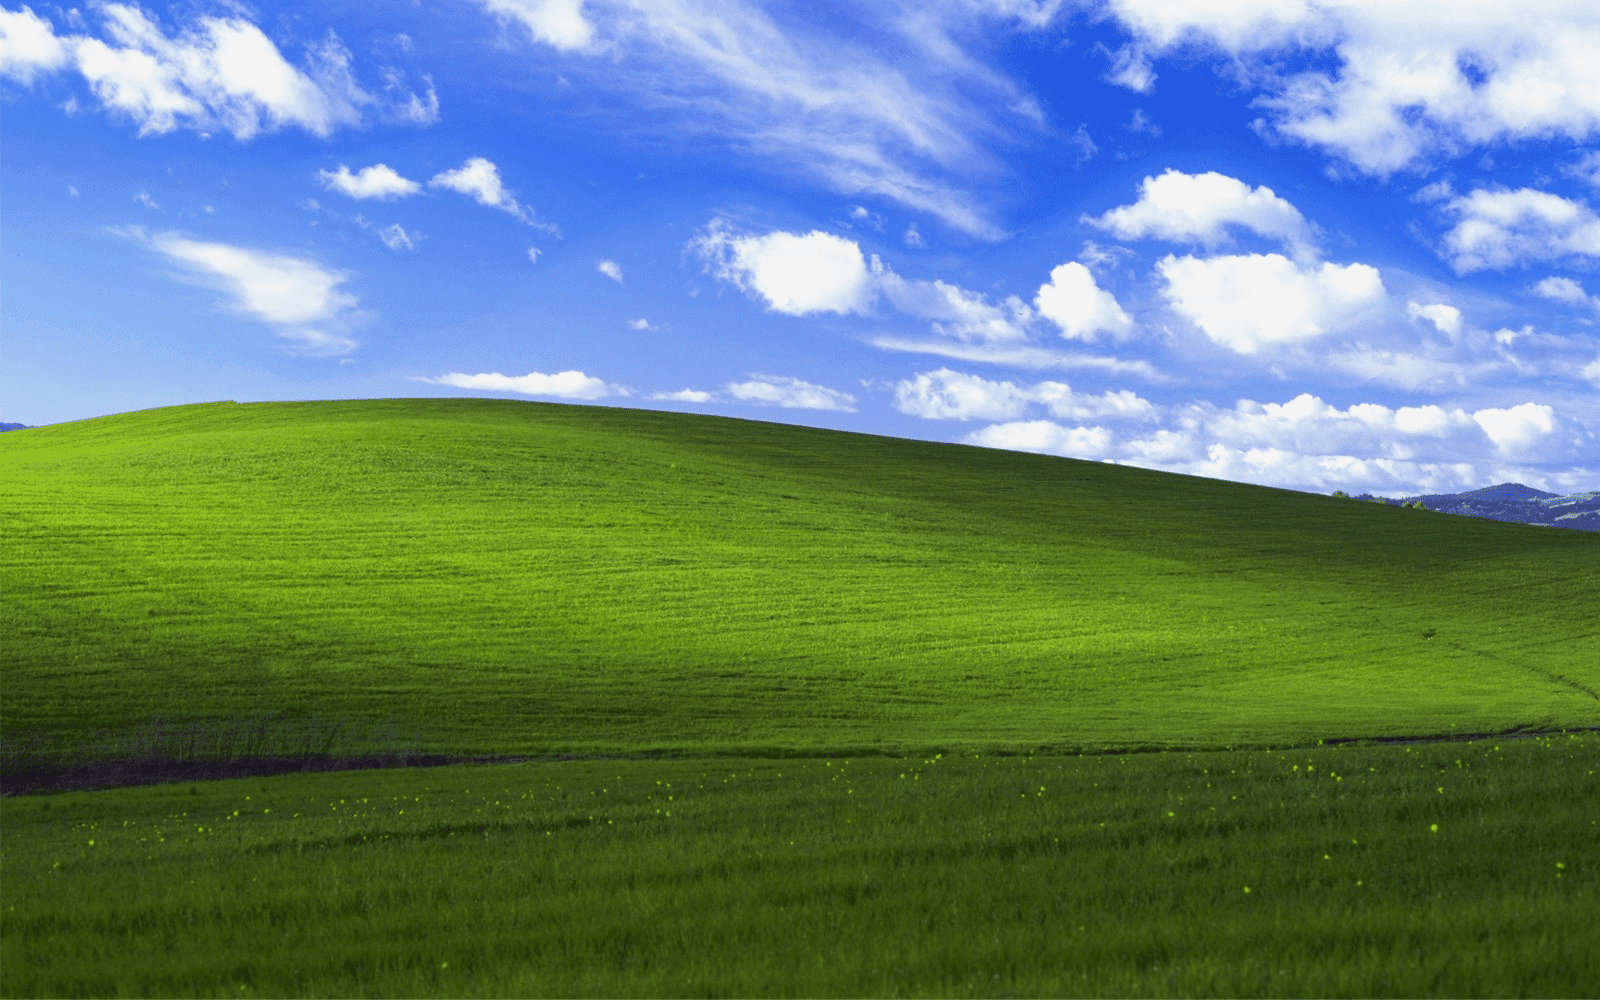 상징적인 Windows XP 녹색 잔디 배경 이미지입니다.